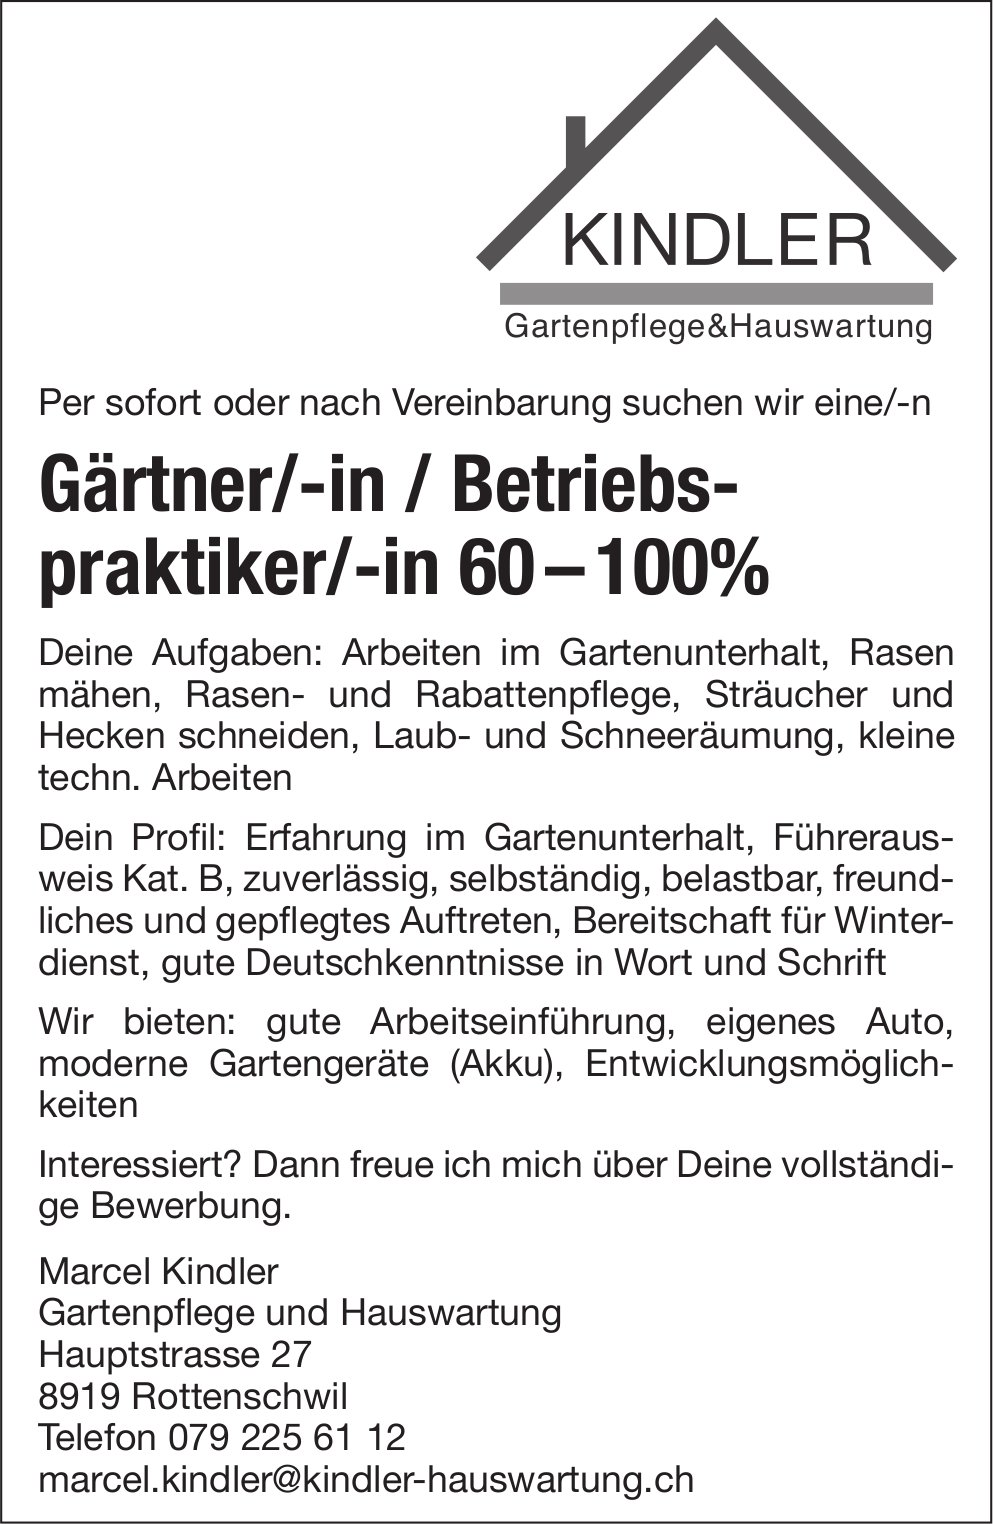 Gärtner/-in / Betriebspraktiker/-in 60-100%, Kindler Gartenpflege & Hauswartung, Rottenschwil, gesucht